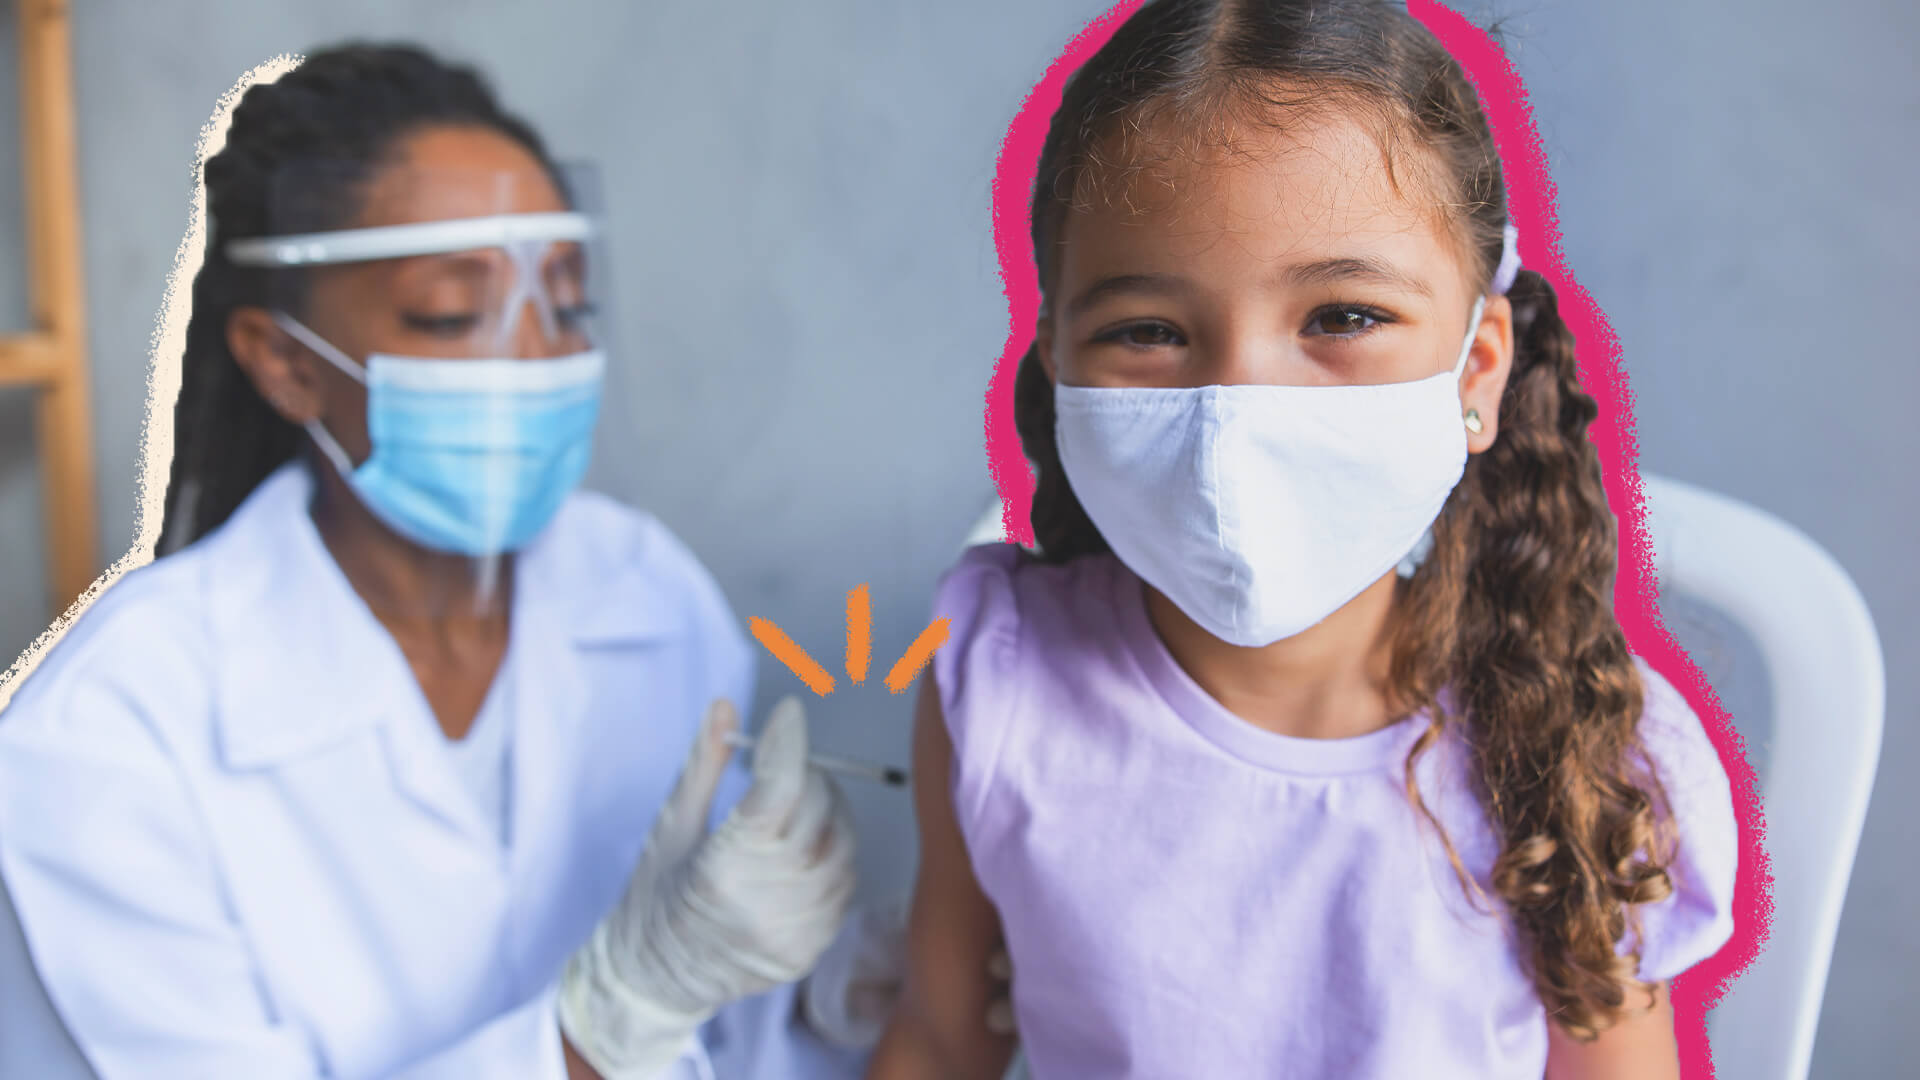 Incentivo a vacinação: na foto, uma menina está sendo vacinada. Ela tem pele clara e utiliza uma máscara. A imagem possui intervenções de rabiscos coloridos.